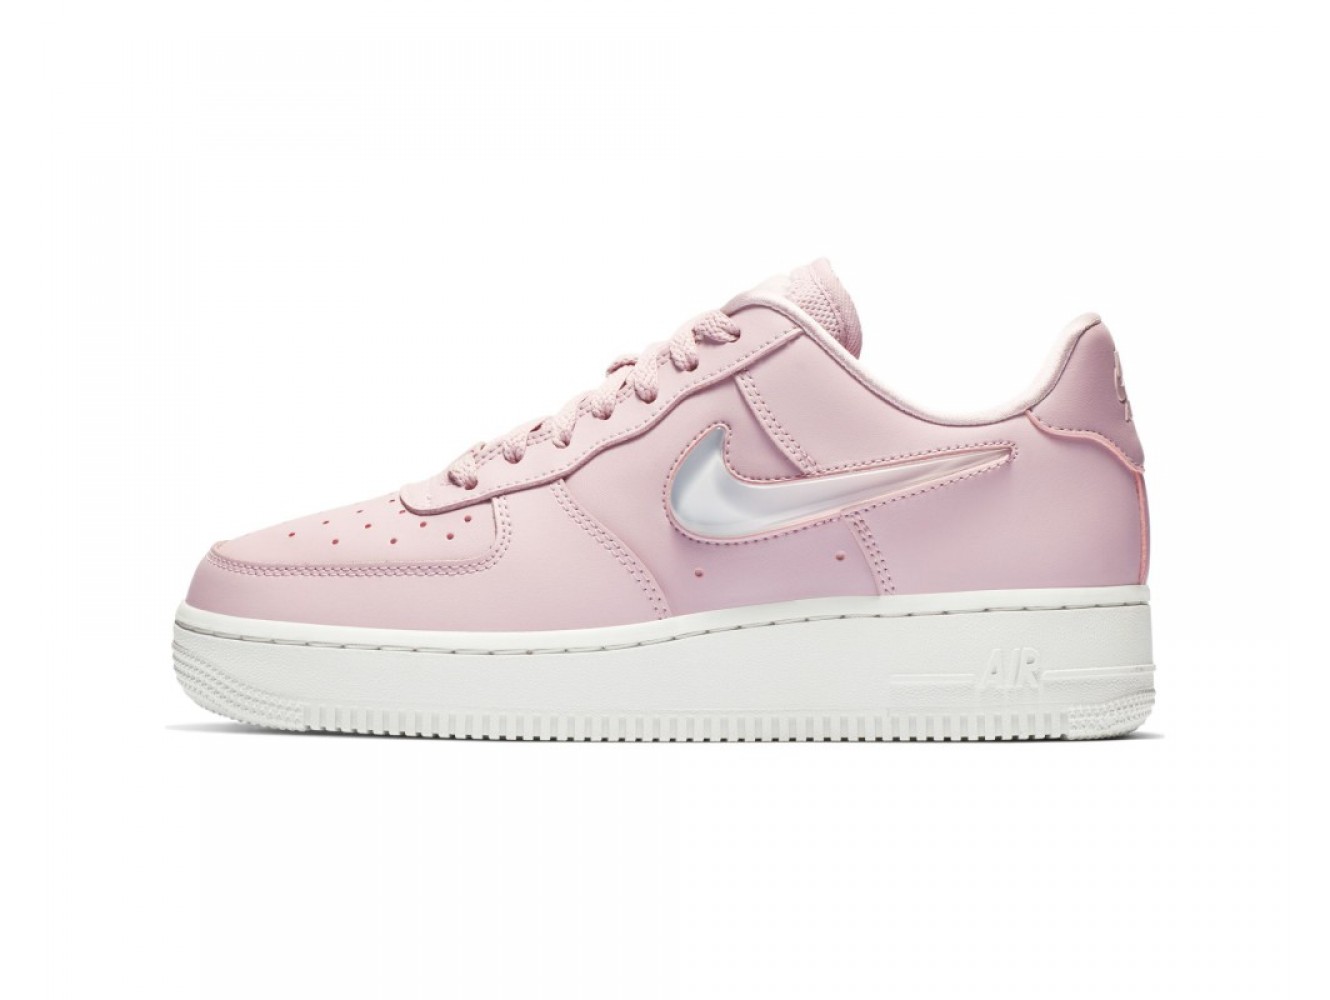 Кроссовки Nike Air Force 1 '07 SE Premium Pink (36-40) купить в дисконт  интернет-магазине Nike с доставкой